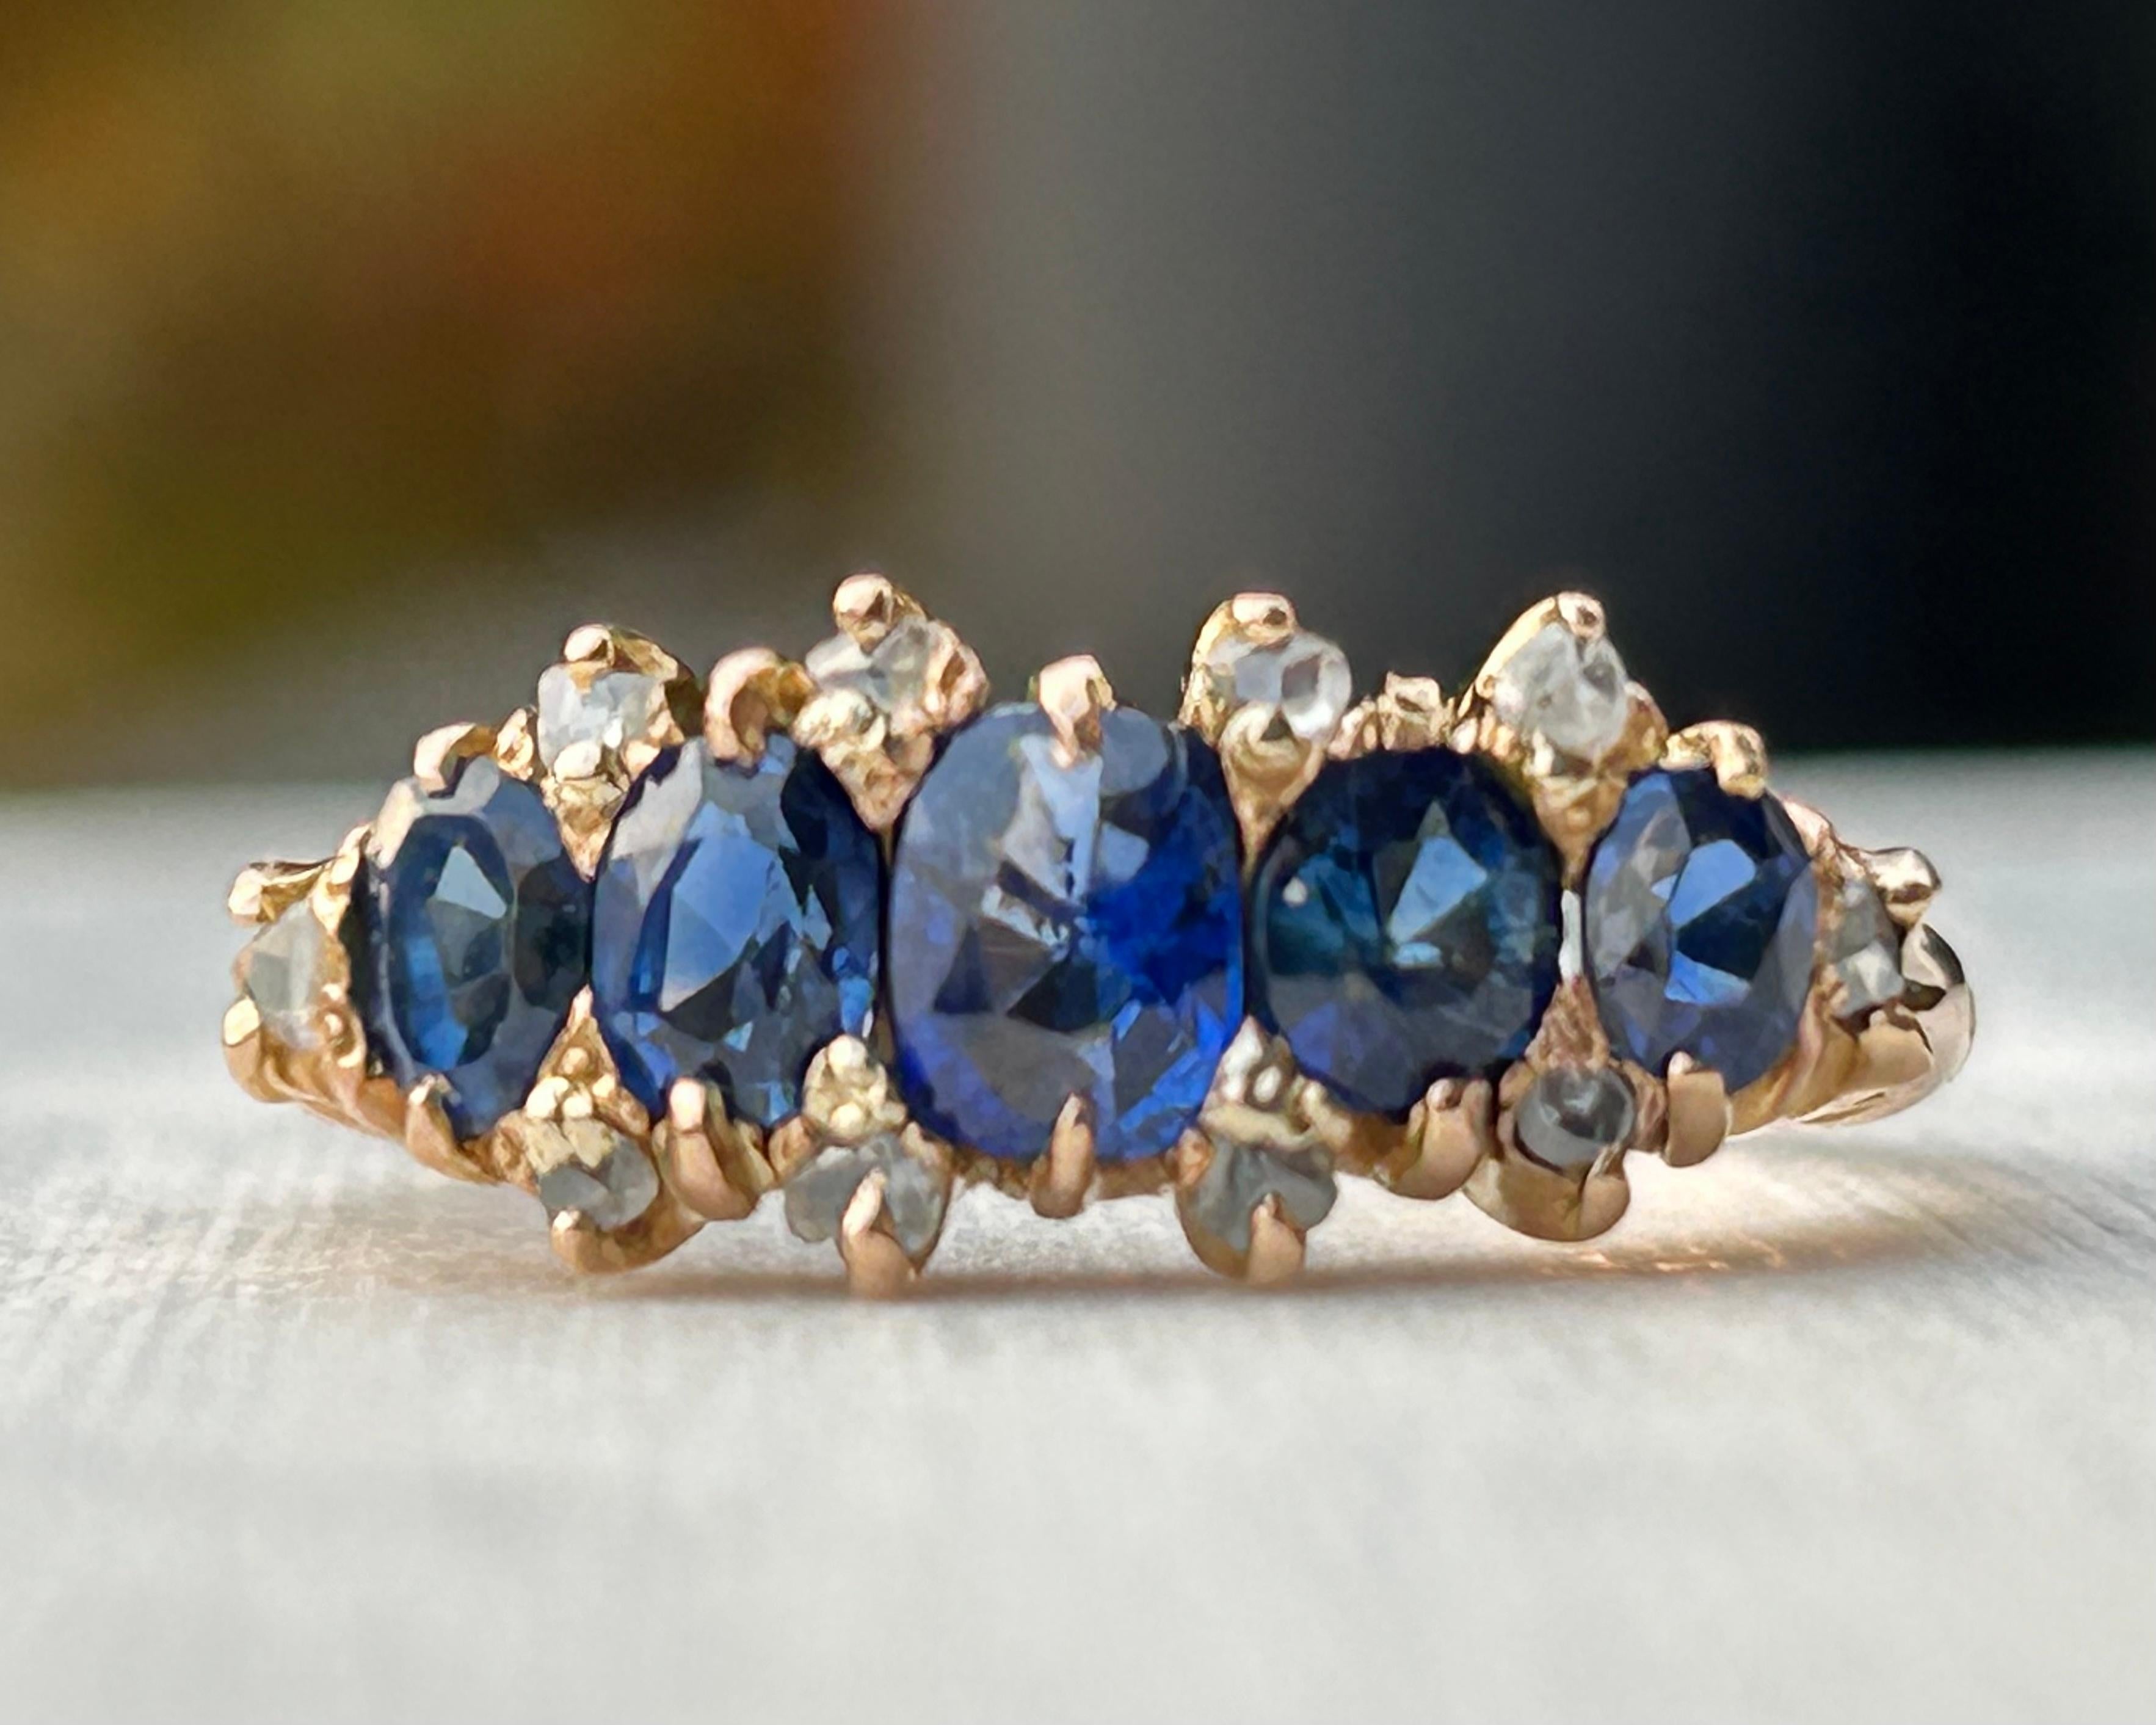 Bracelet en or rose 18 carats fait à la main, saphir bleu violet vif à 5 pierres et diamant taillé en rose. Le bracelet mesure environ 3,75 mm à l'épaule et se rétrécit à 1,45 mm à la base. Les pierres s'étendent sur environ 7,87 mm de longueur. Il